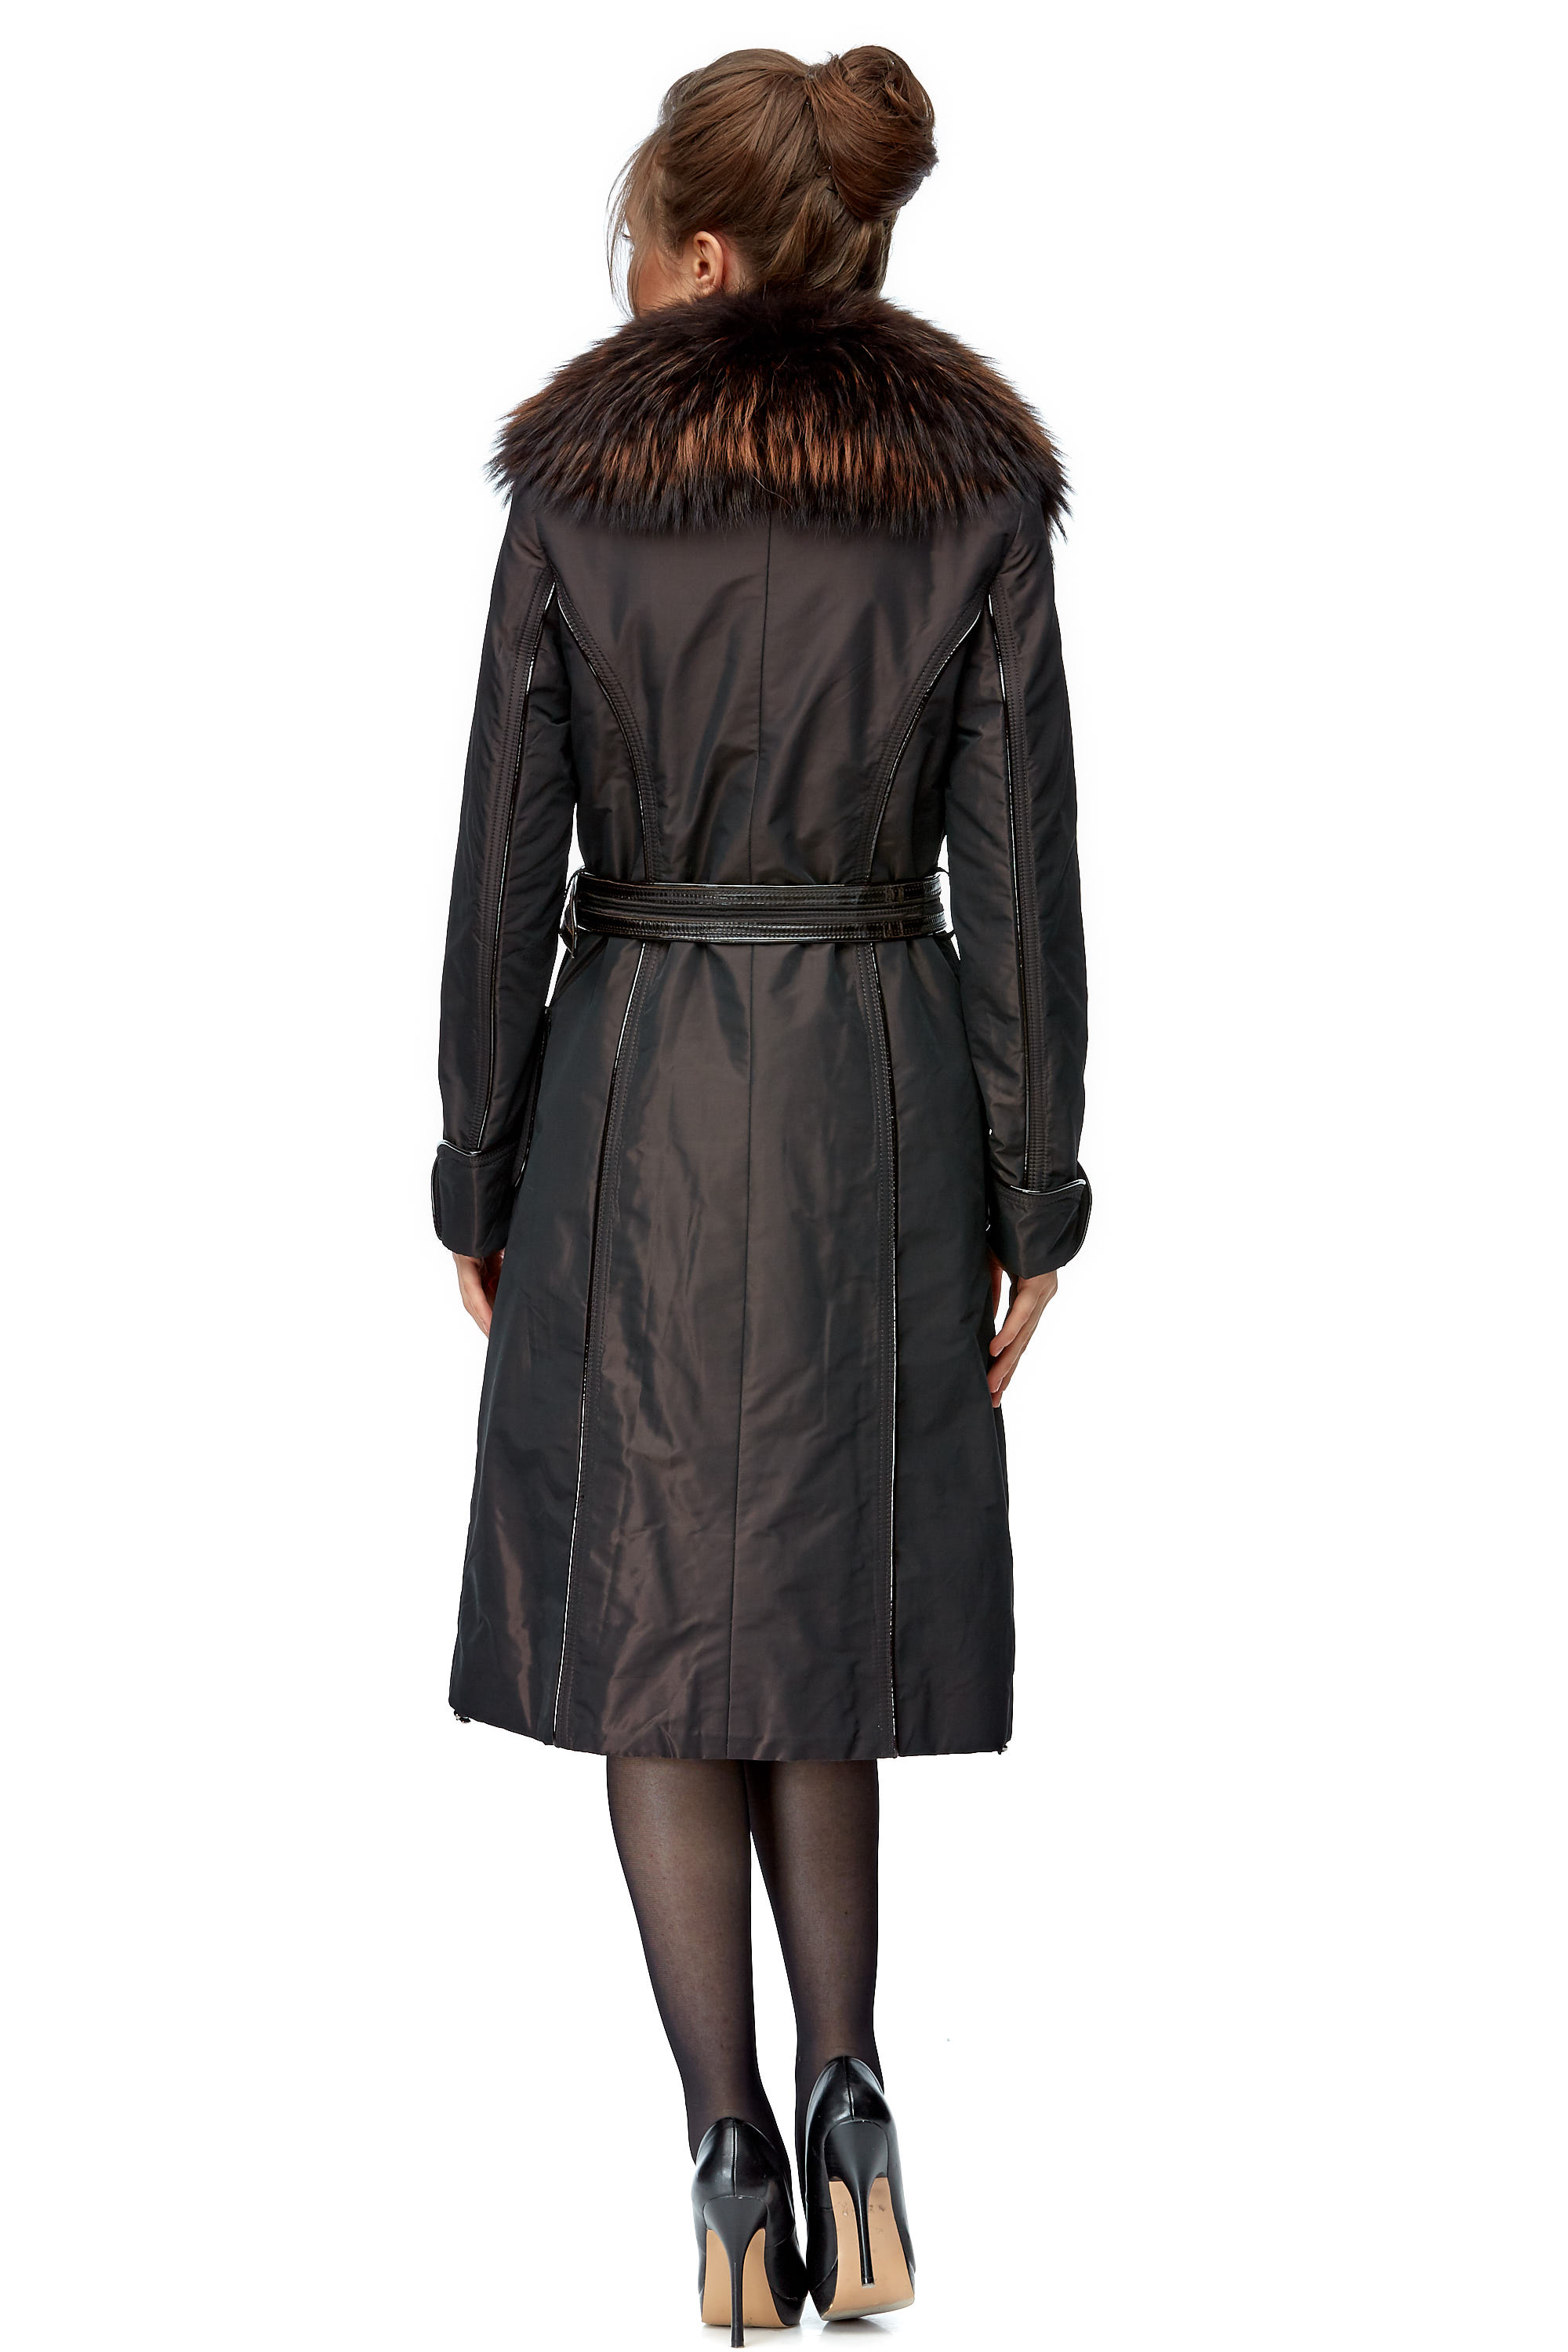 Женское пальто из текстиля с воротником, отделка енот 8003031-2